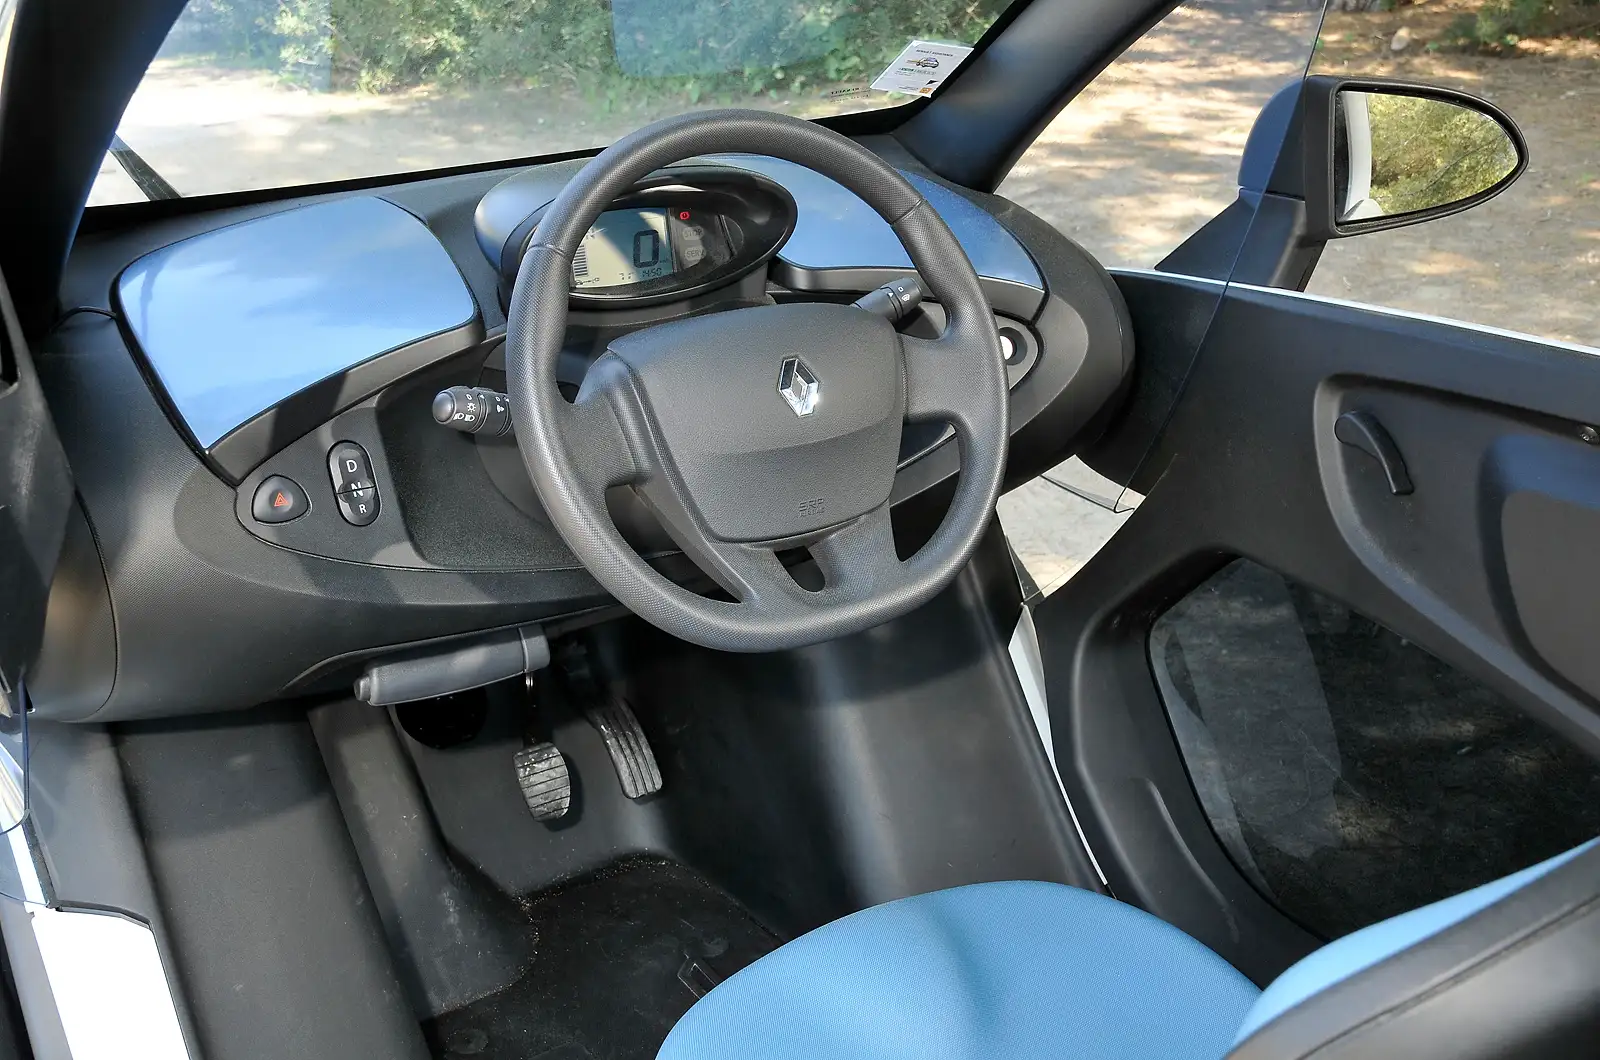 Renault Twizy interior - Cockpit